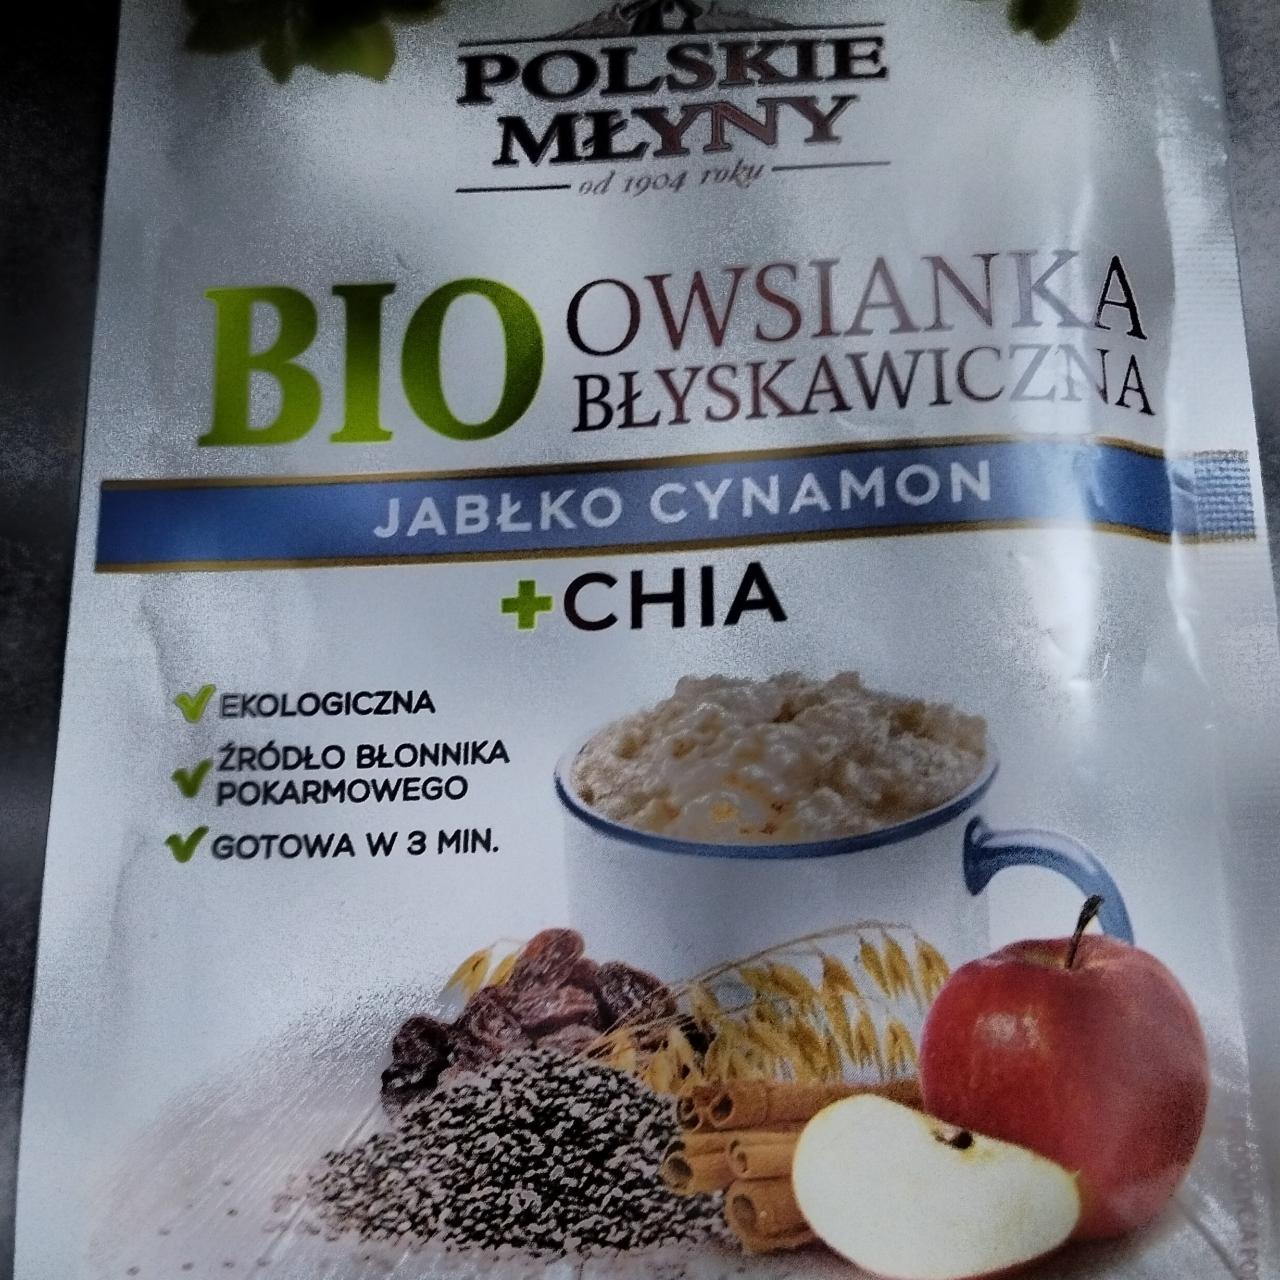 Zdjęcia - Bio Owsianka błyskawiczna jabłko cynamon + chia Polskie Młyny